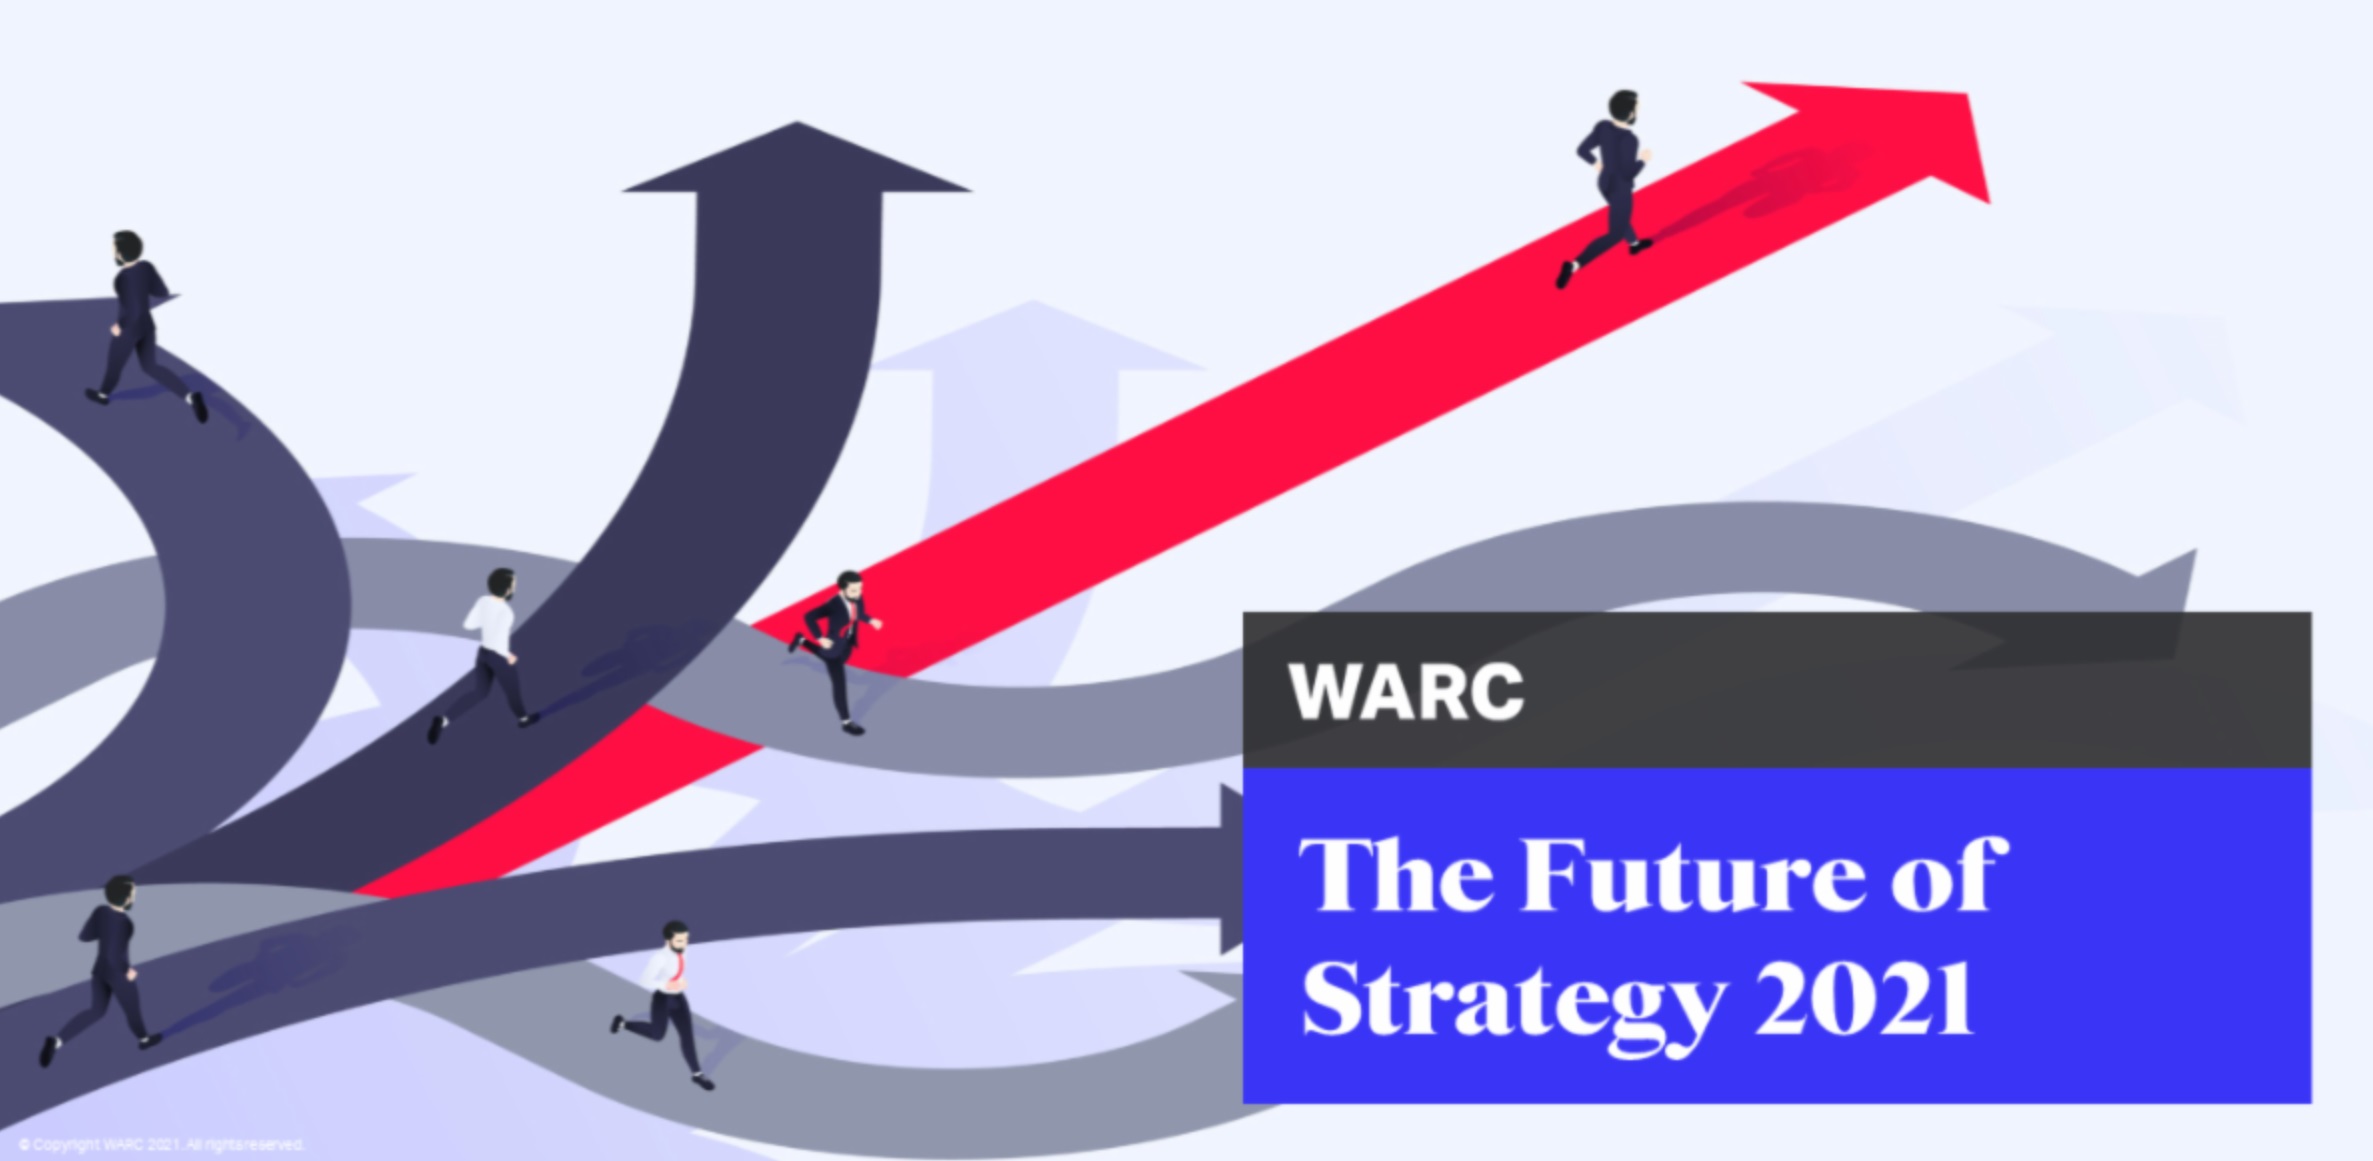 WARC,FUTURE, STRATEGY, 2021,programapublicidad